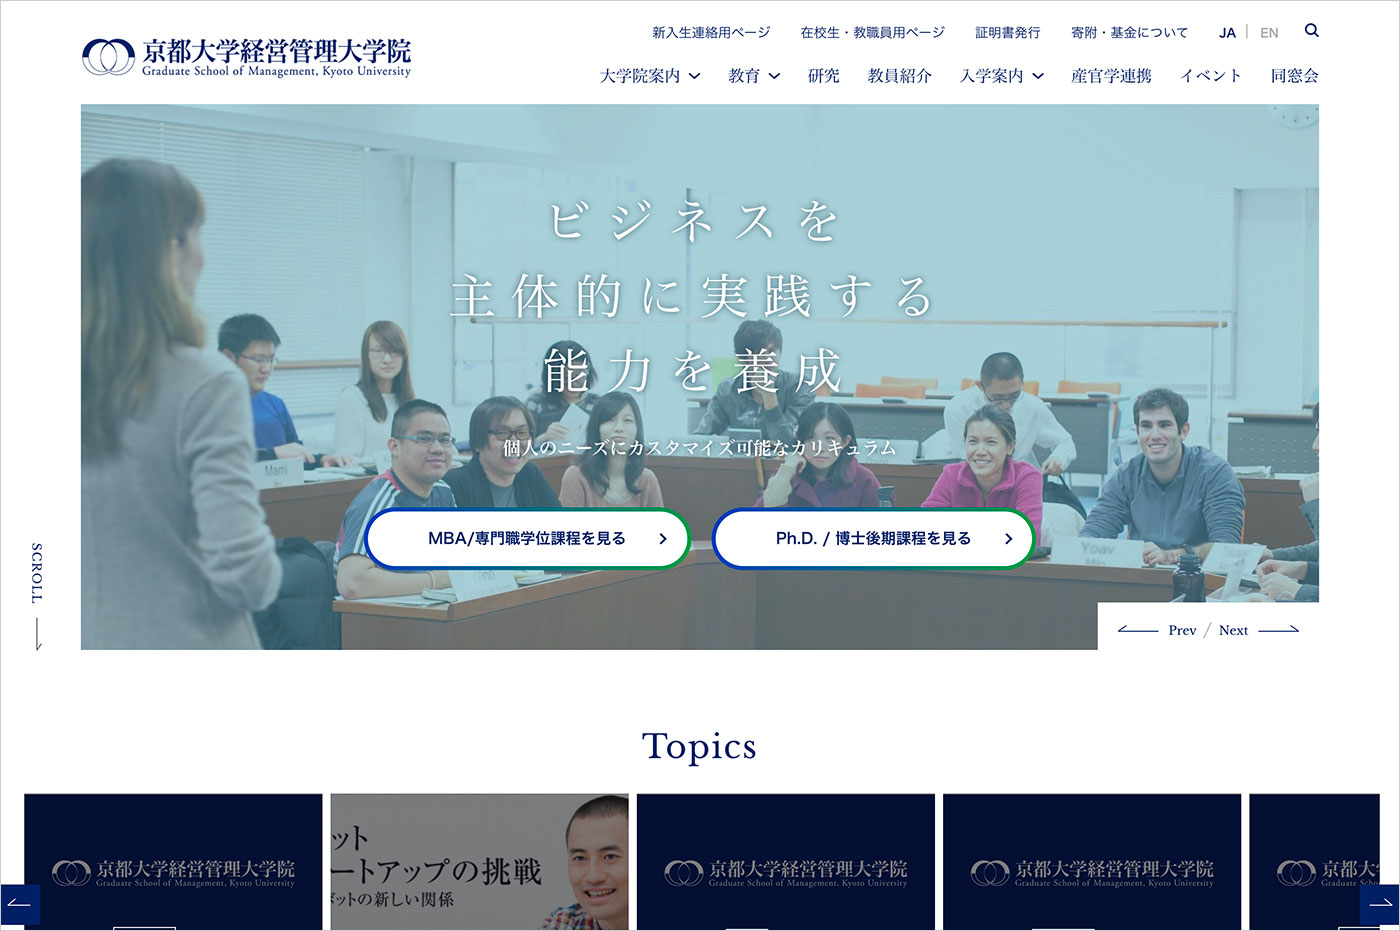 京都大学経営管理大学院 – Graduate School of Management, Kyoto Universityウェブサイトの画面キャプチャ画像